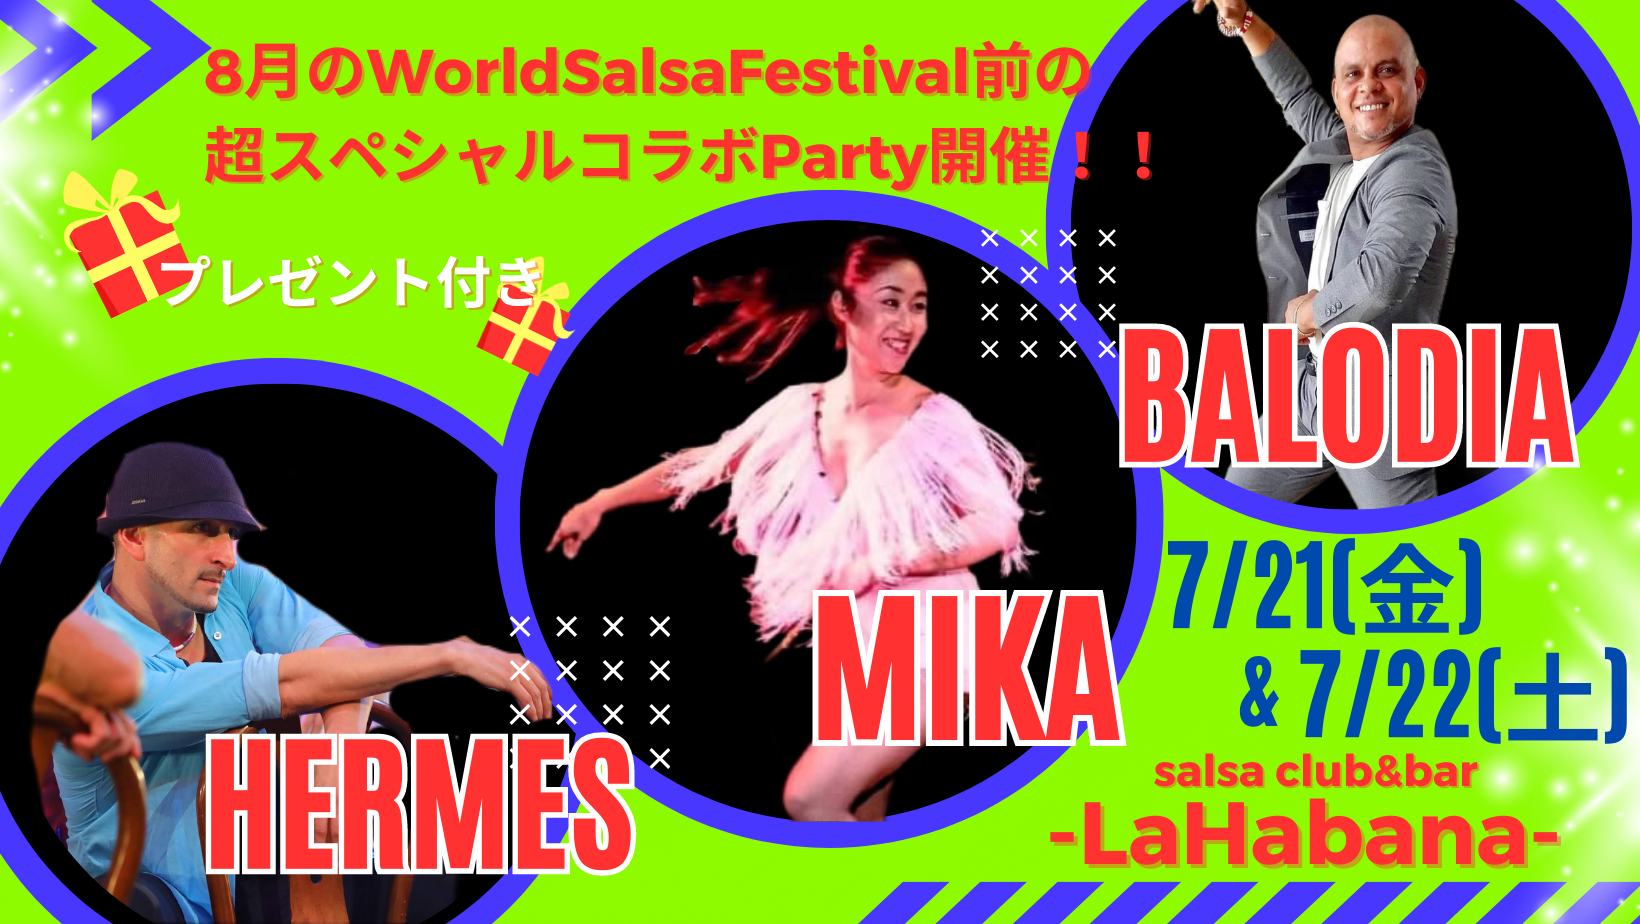 7/22(土)MIKA&Balodia&HermesスペシャルコラボParty